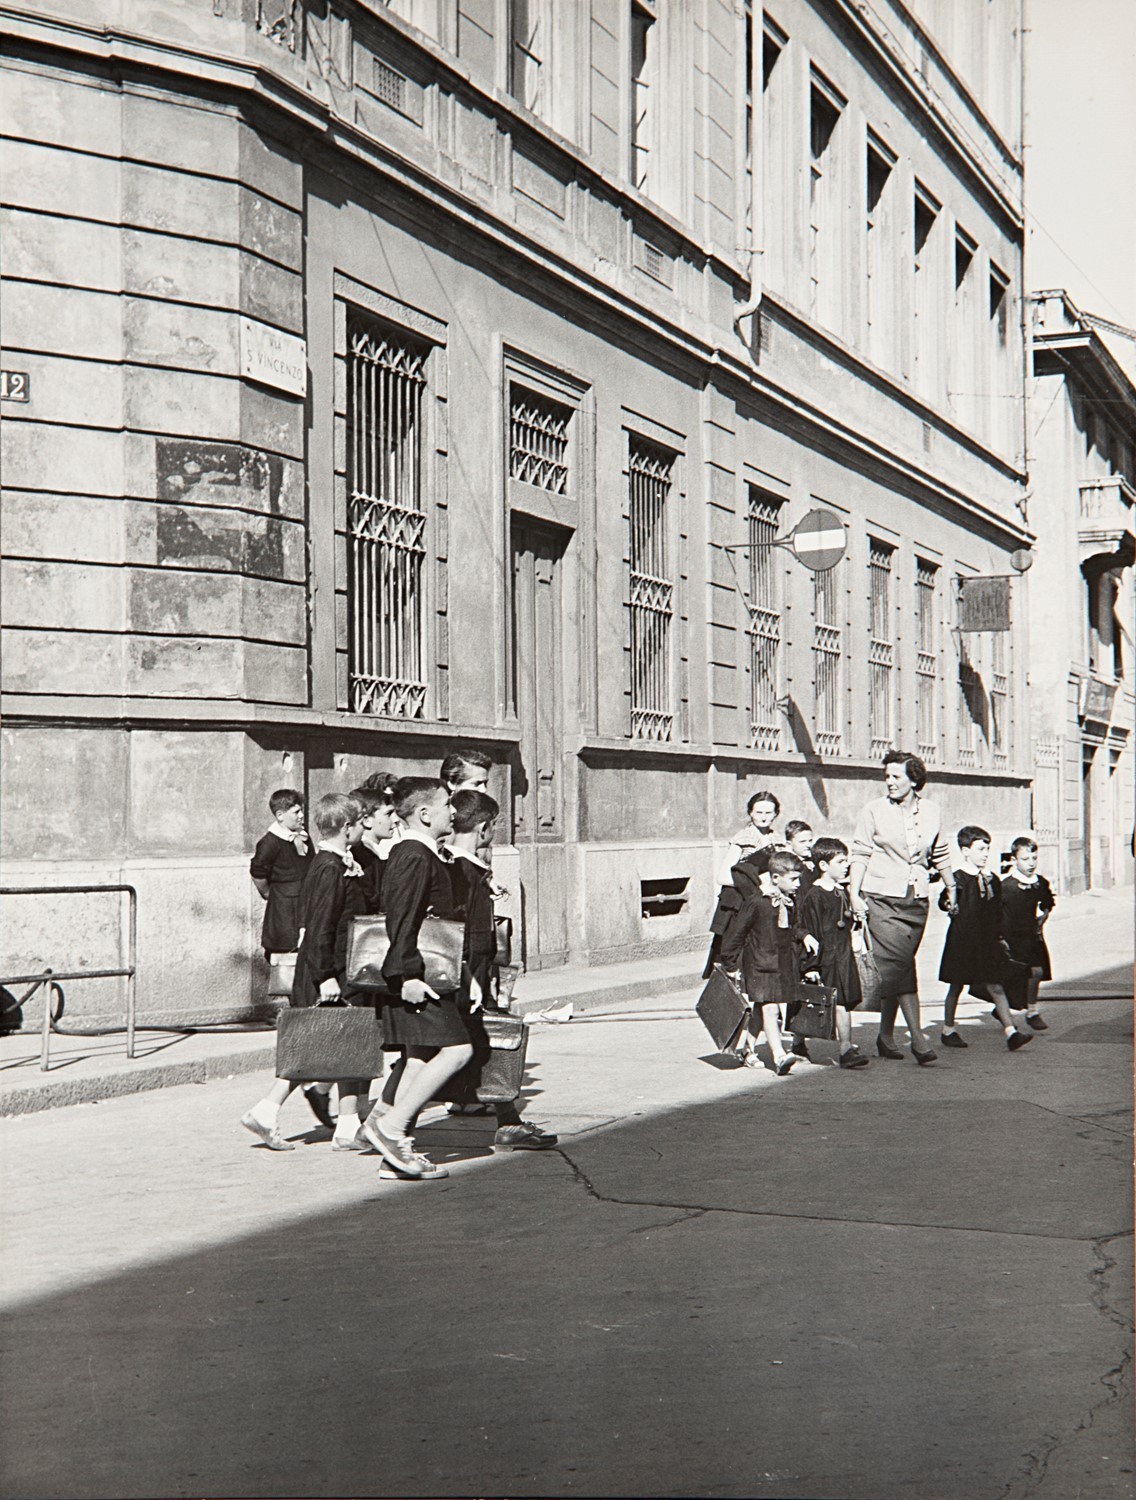 Школьники, Милан, 1960. Фотограф Марио Де Бьязи